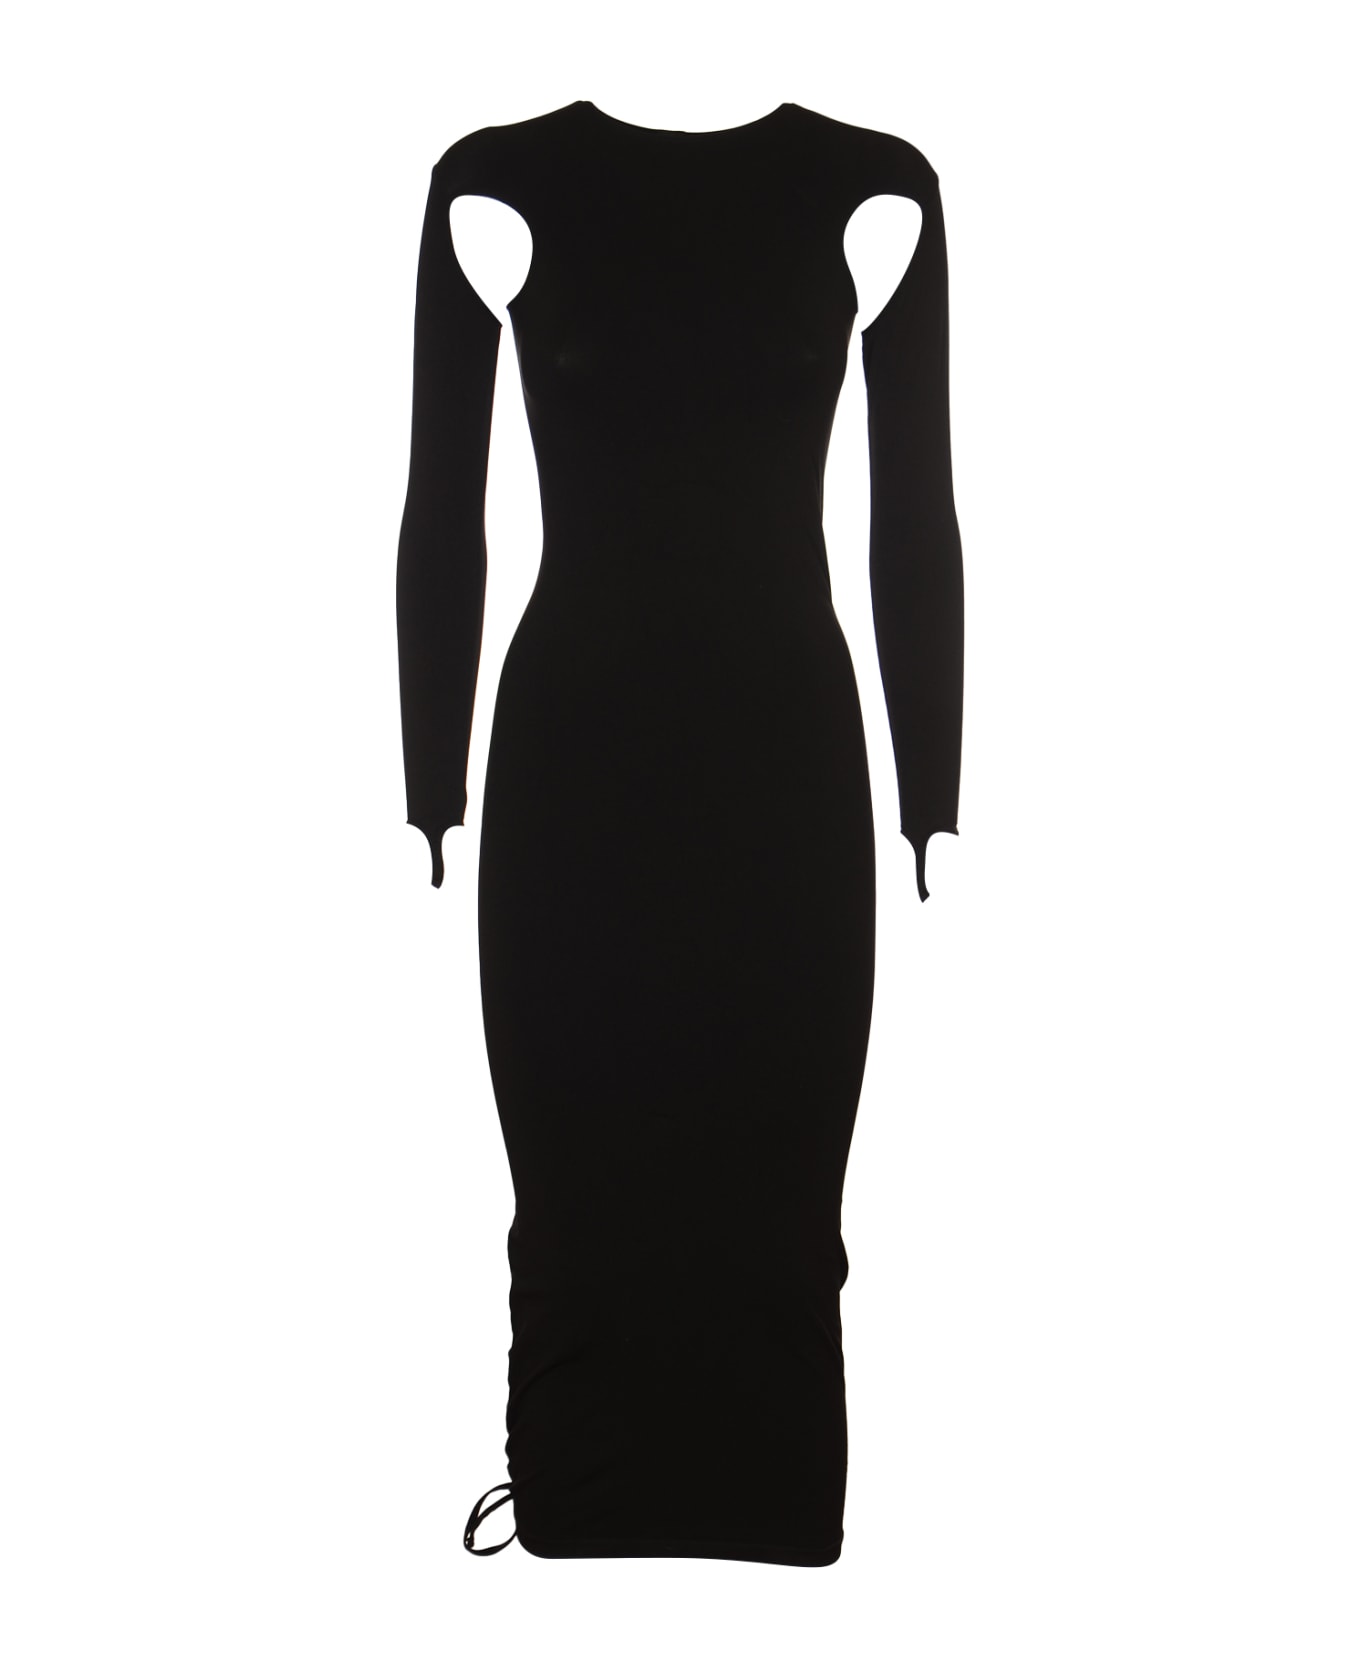 ANDREĀDAMO Sculpting Dress - Black